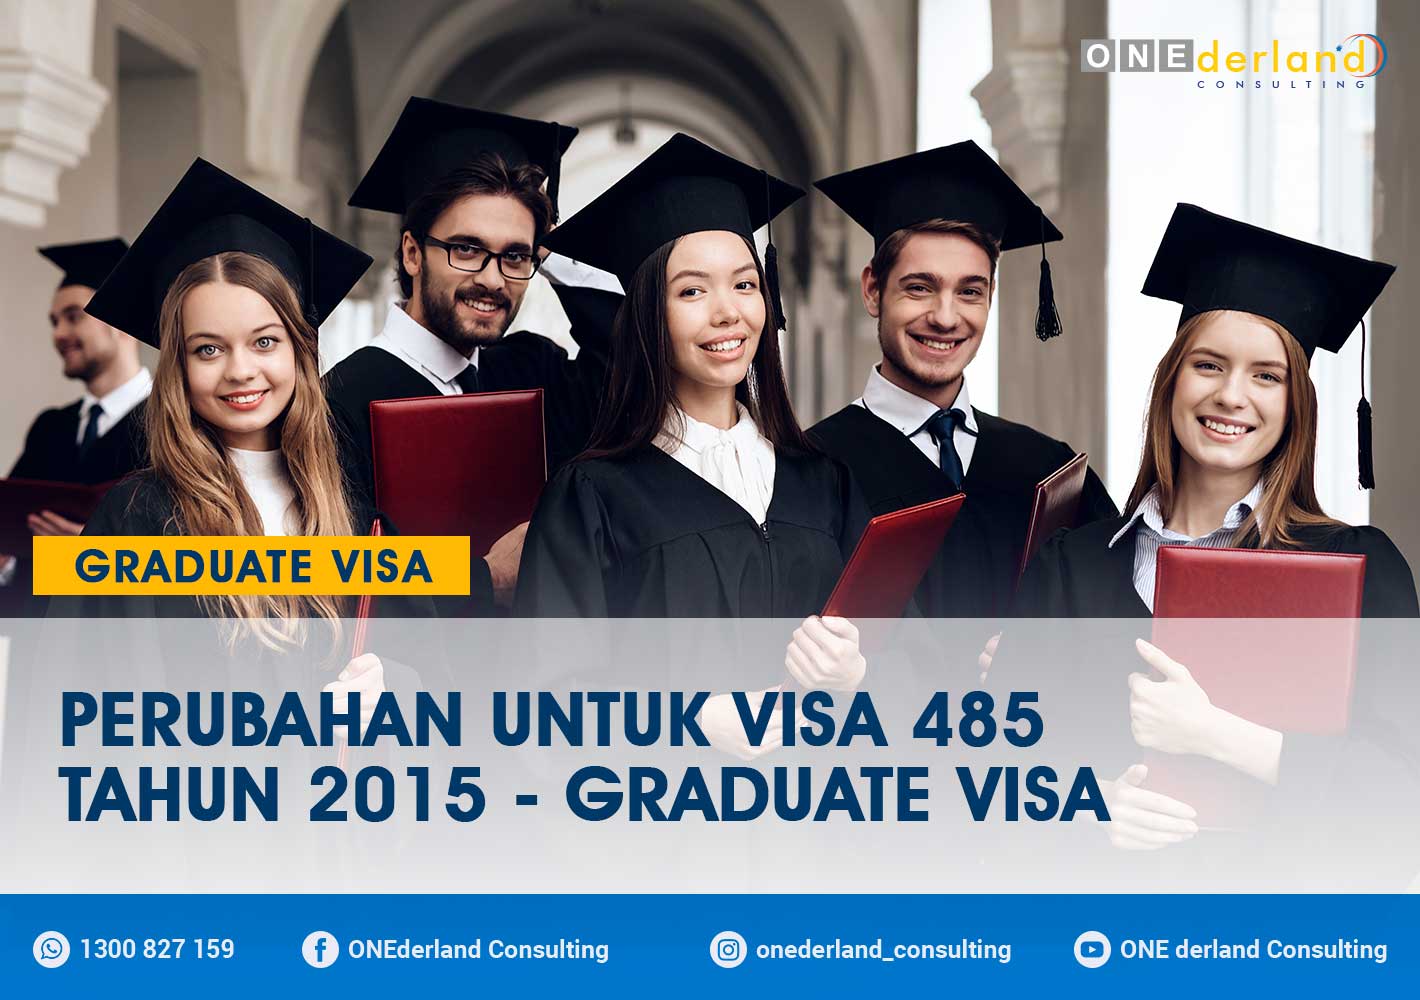 Perubahan Untuk Visa 485 Tahun 2015 – Graduate Visa